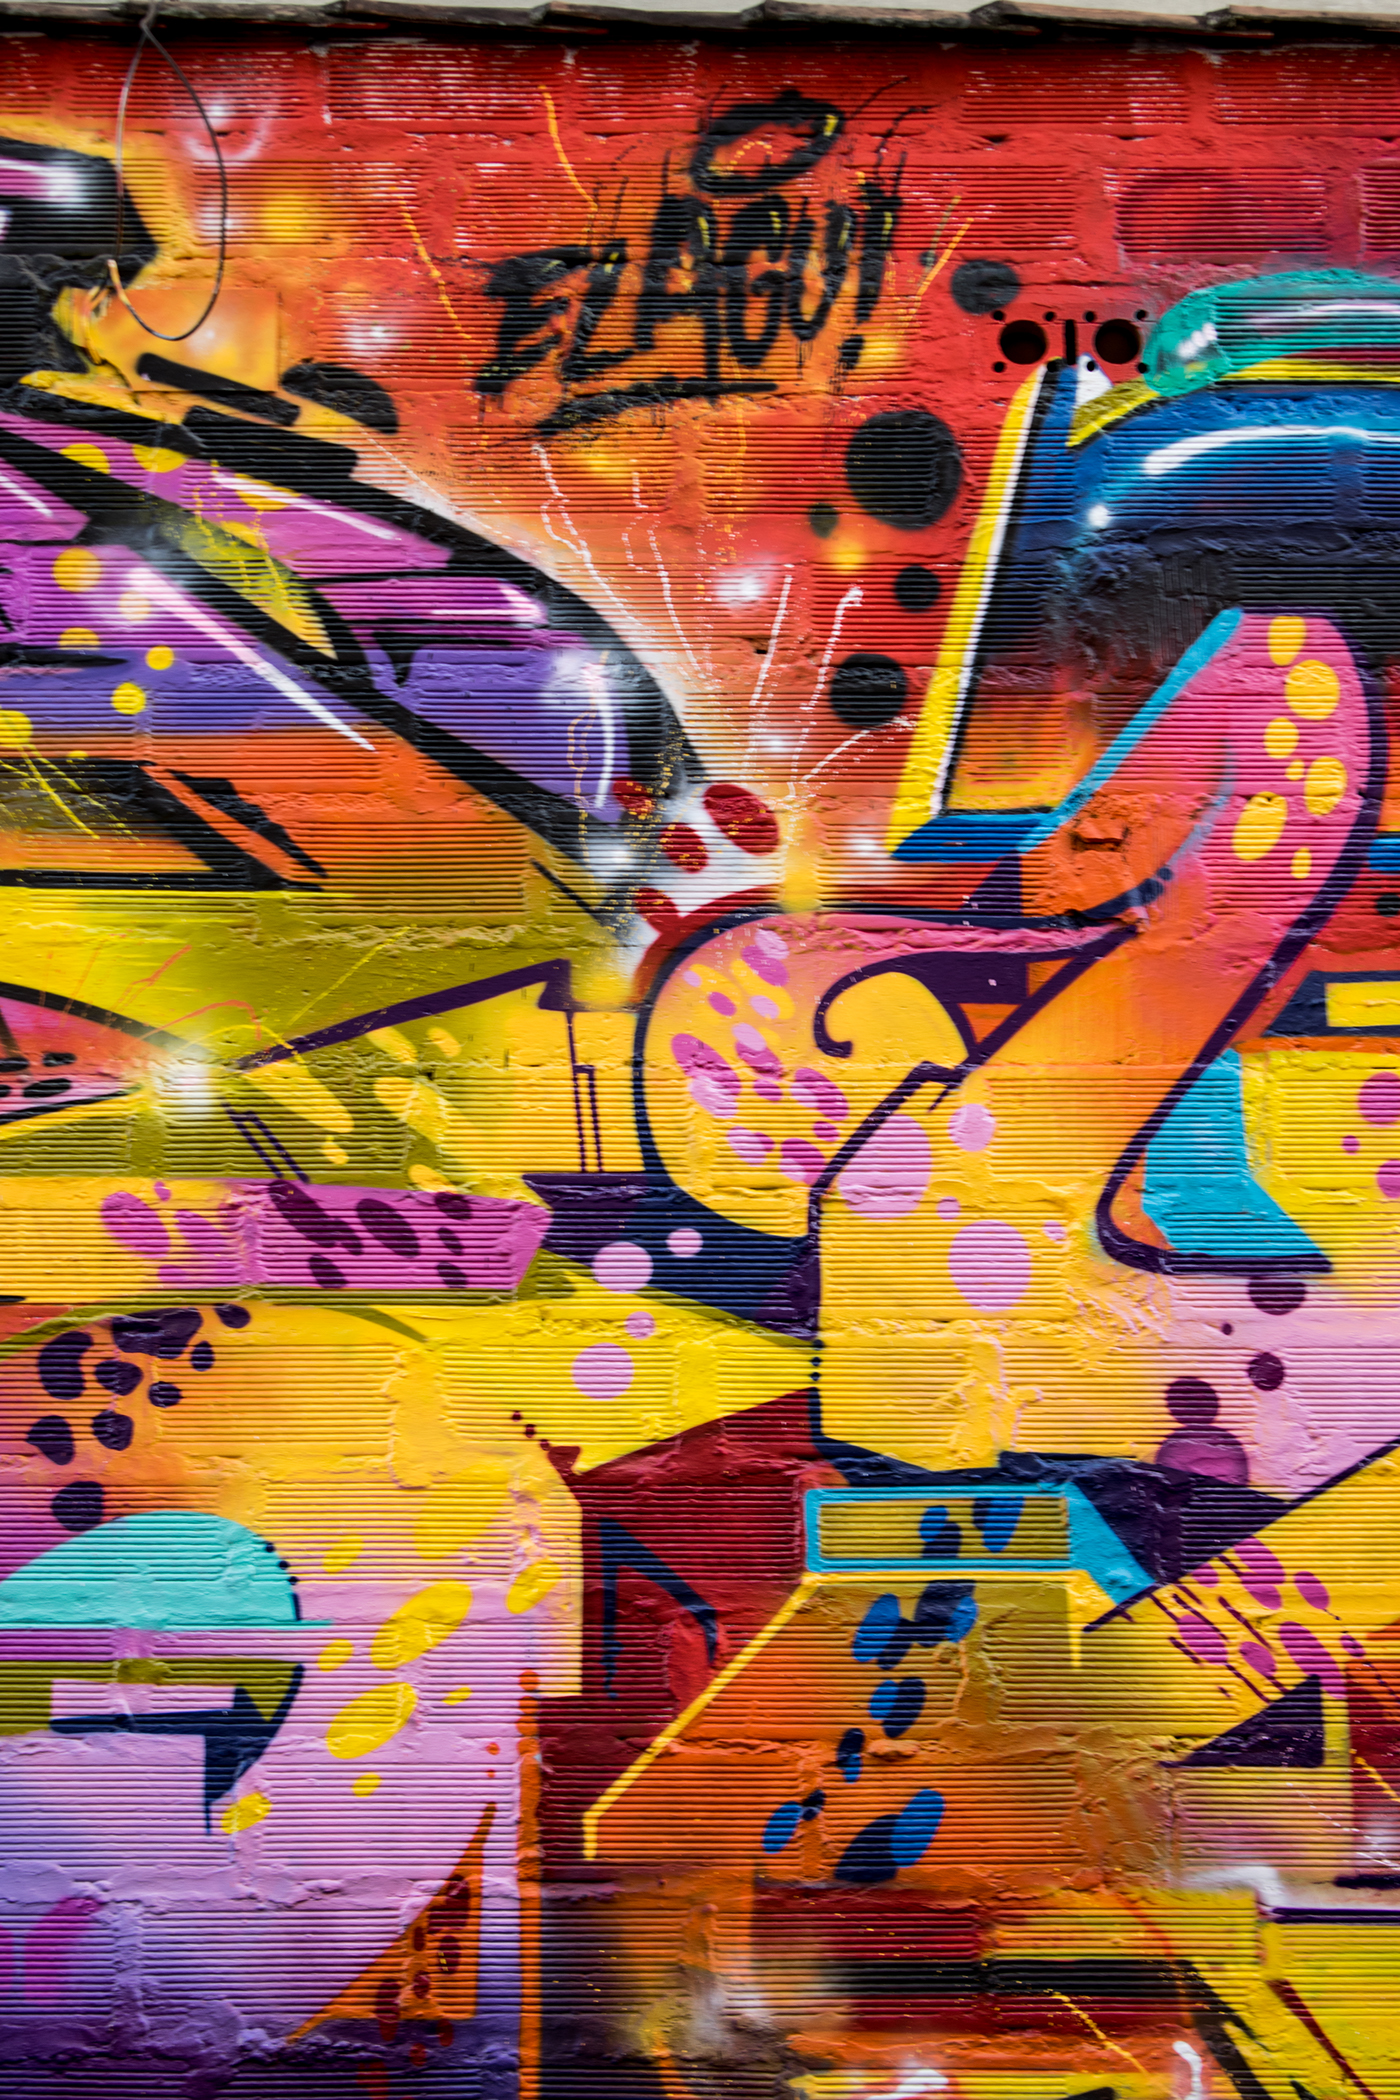 Street art medellin colombia pictopia colour Graffiti friends festival Photography 